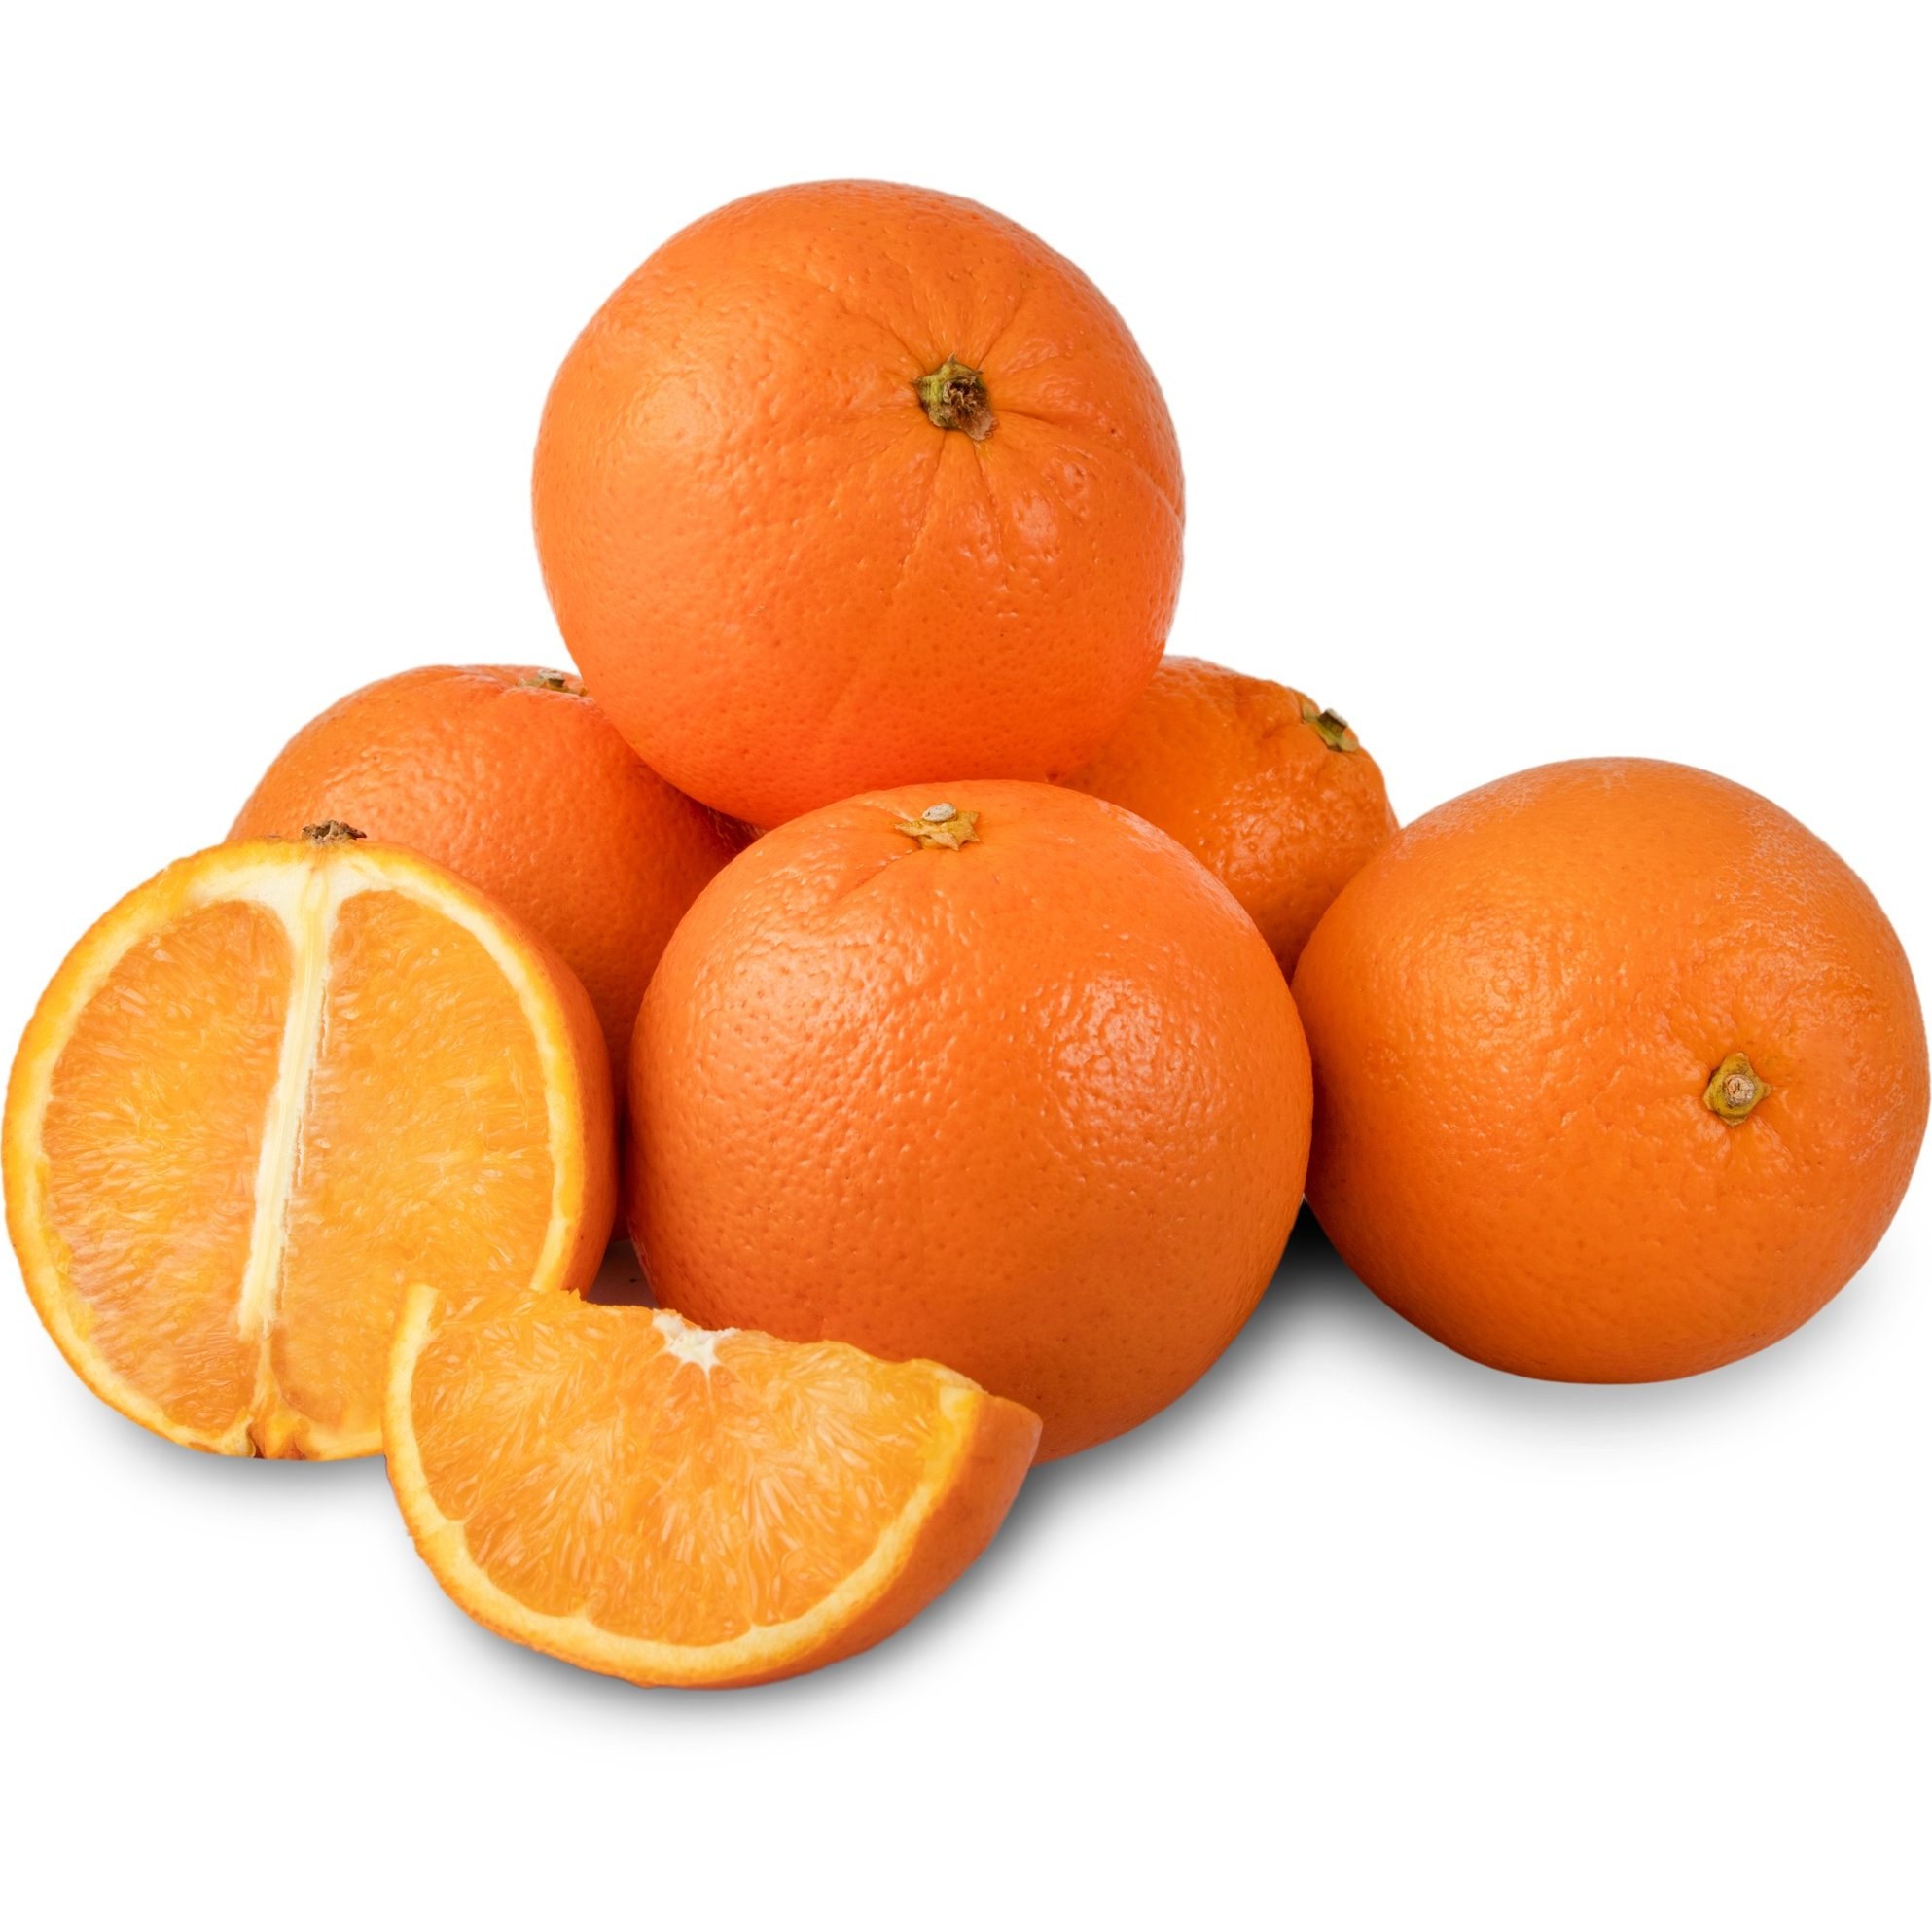 خرید و قیمت پرتقال تامسون شمال (تعداد تقریبی ۳ عدد) 1 کیلوگرمی ...